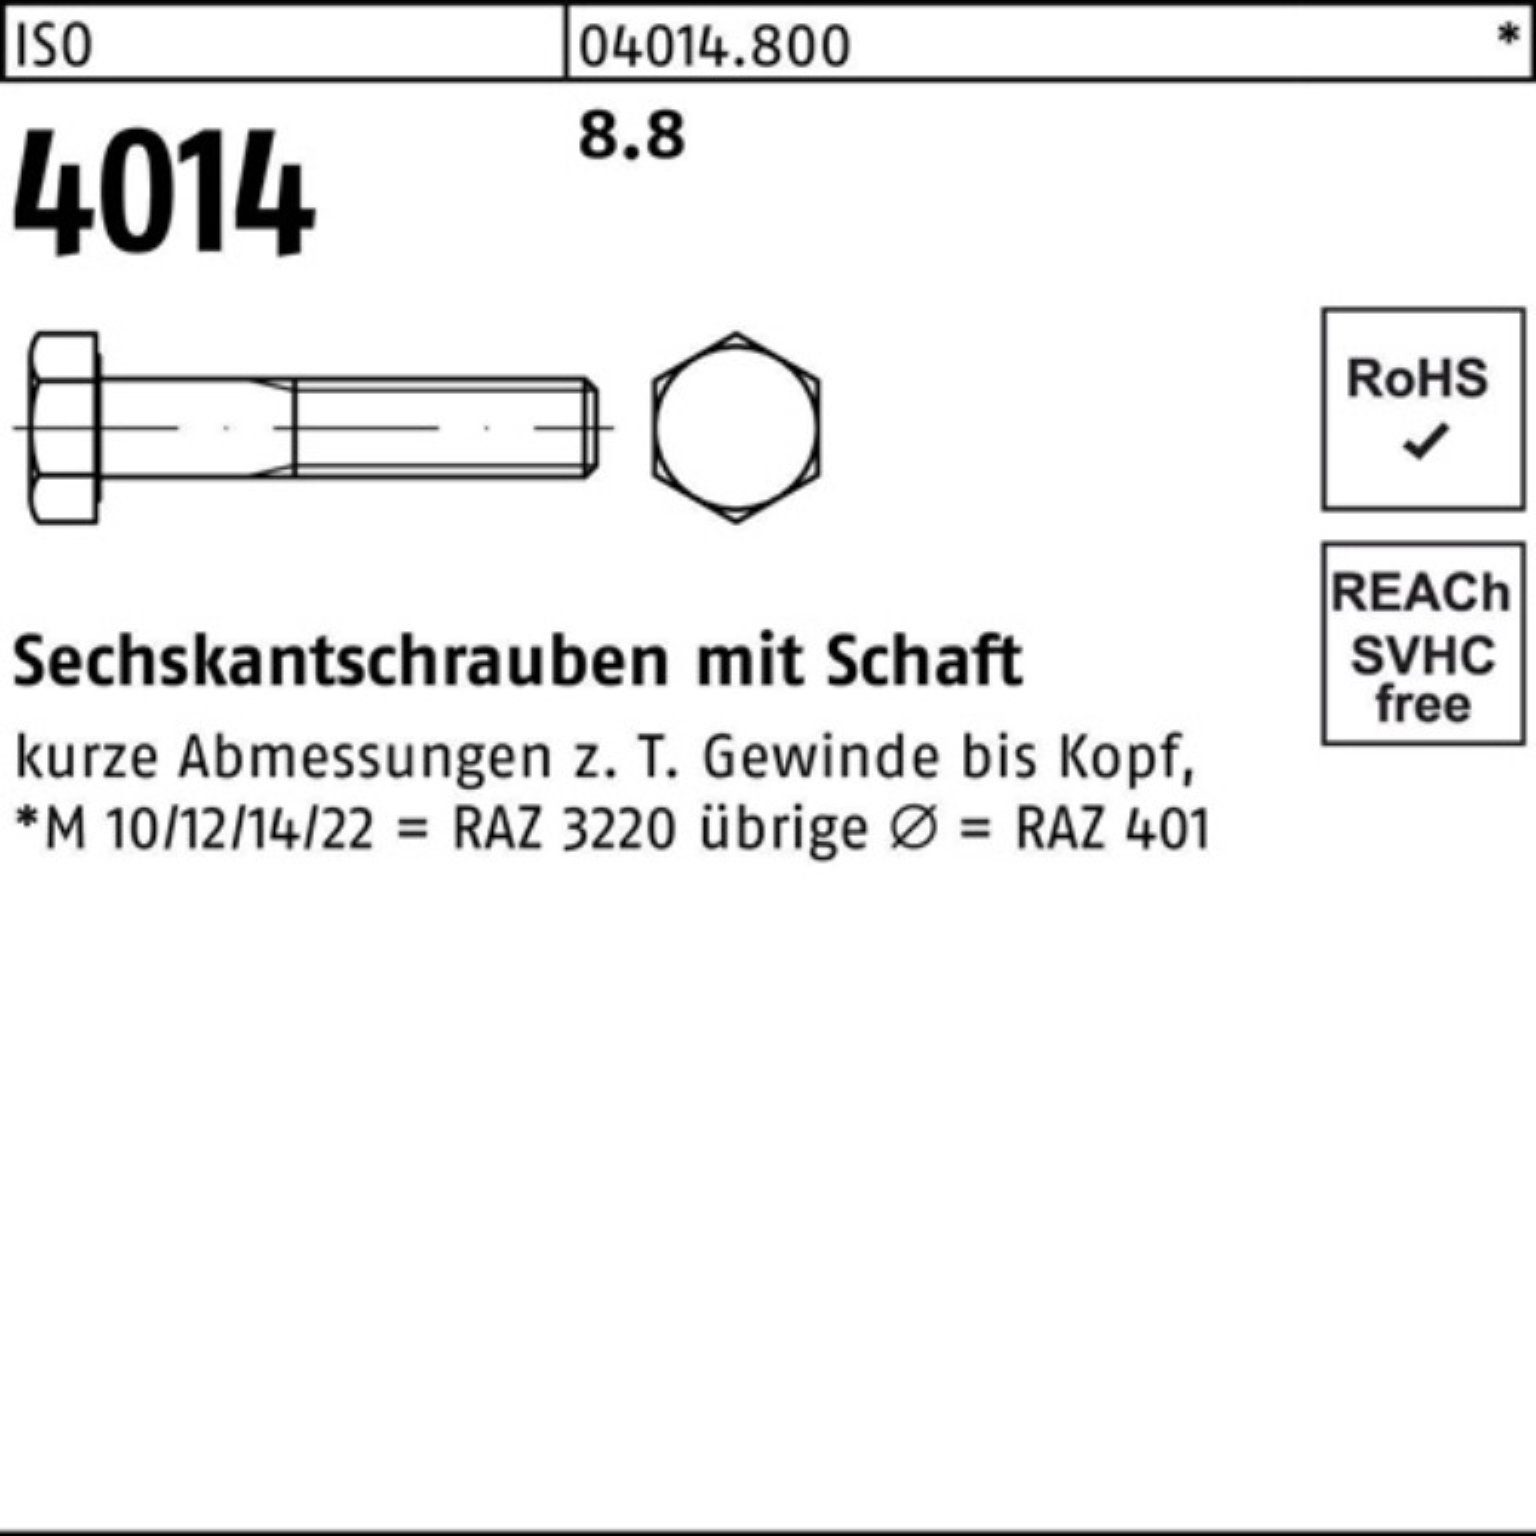 8.8 IS Sechskantschraube 25 Pack Sechskantschraube 4014 Schaft 160 Stück ISO Bufab 100er M14x